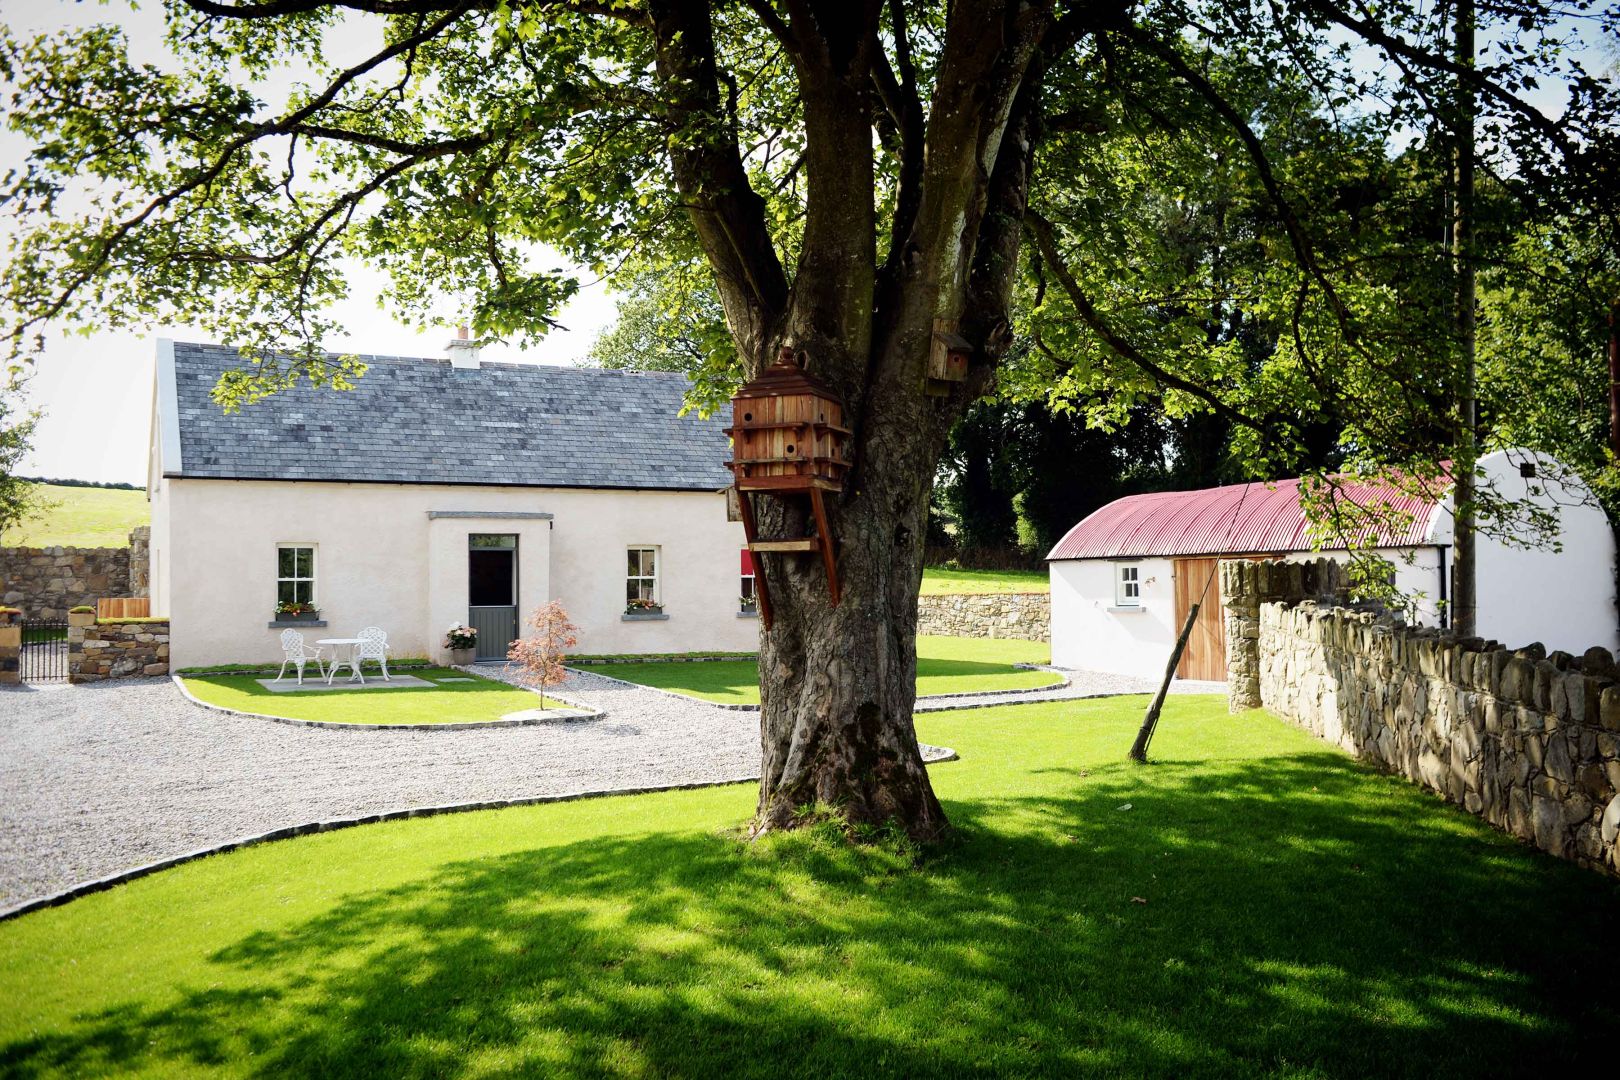 Meadow View Farmhouse | Luxury Tours of Ireland